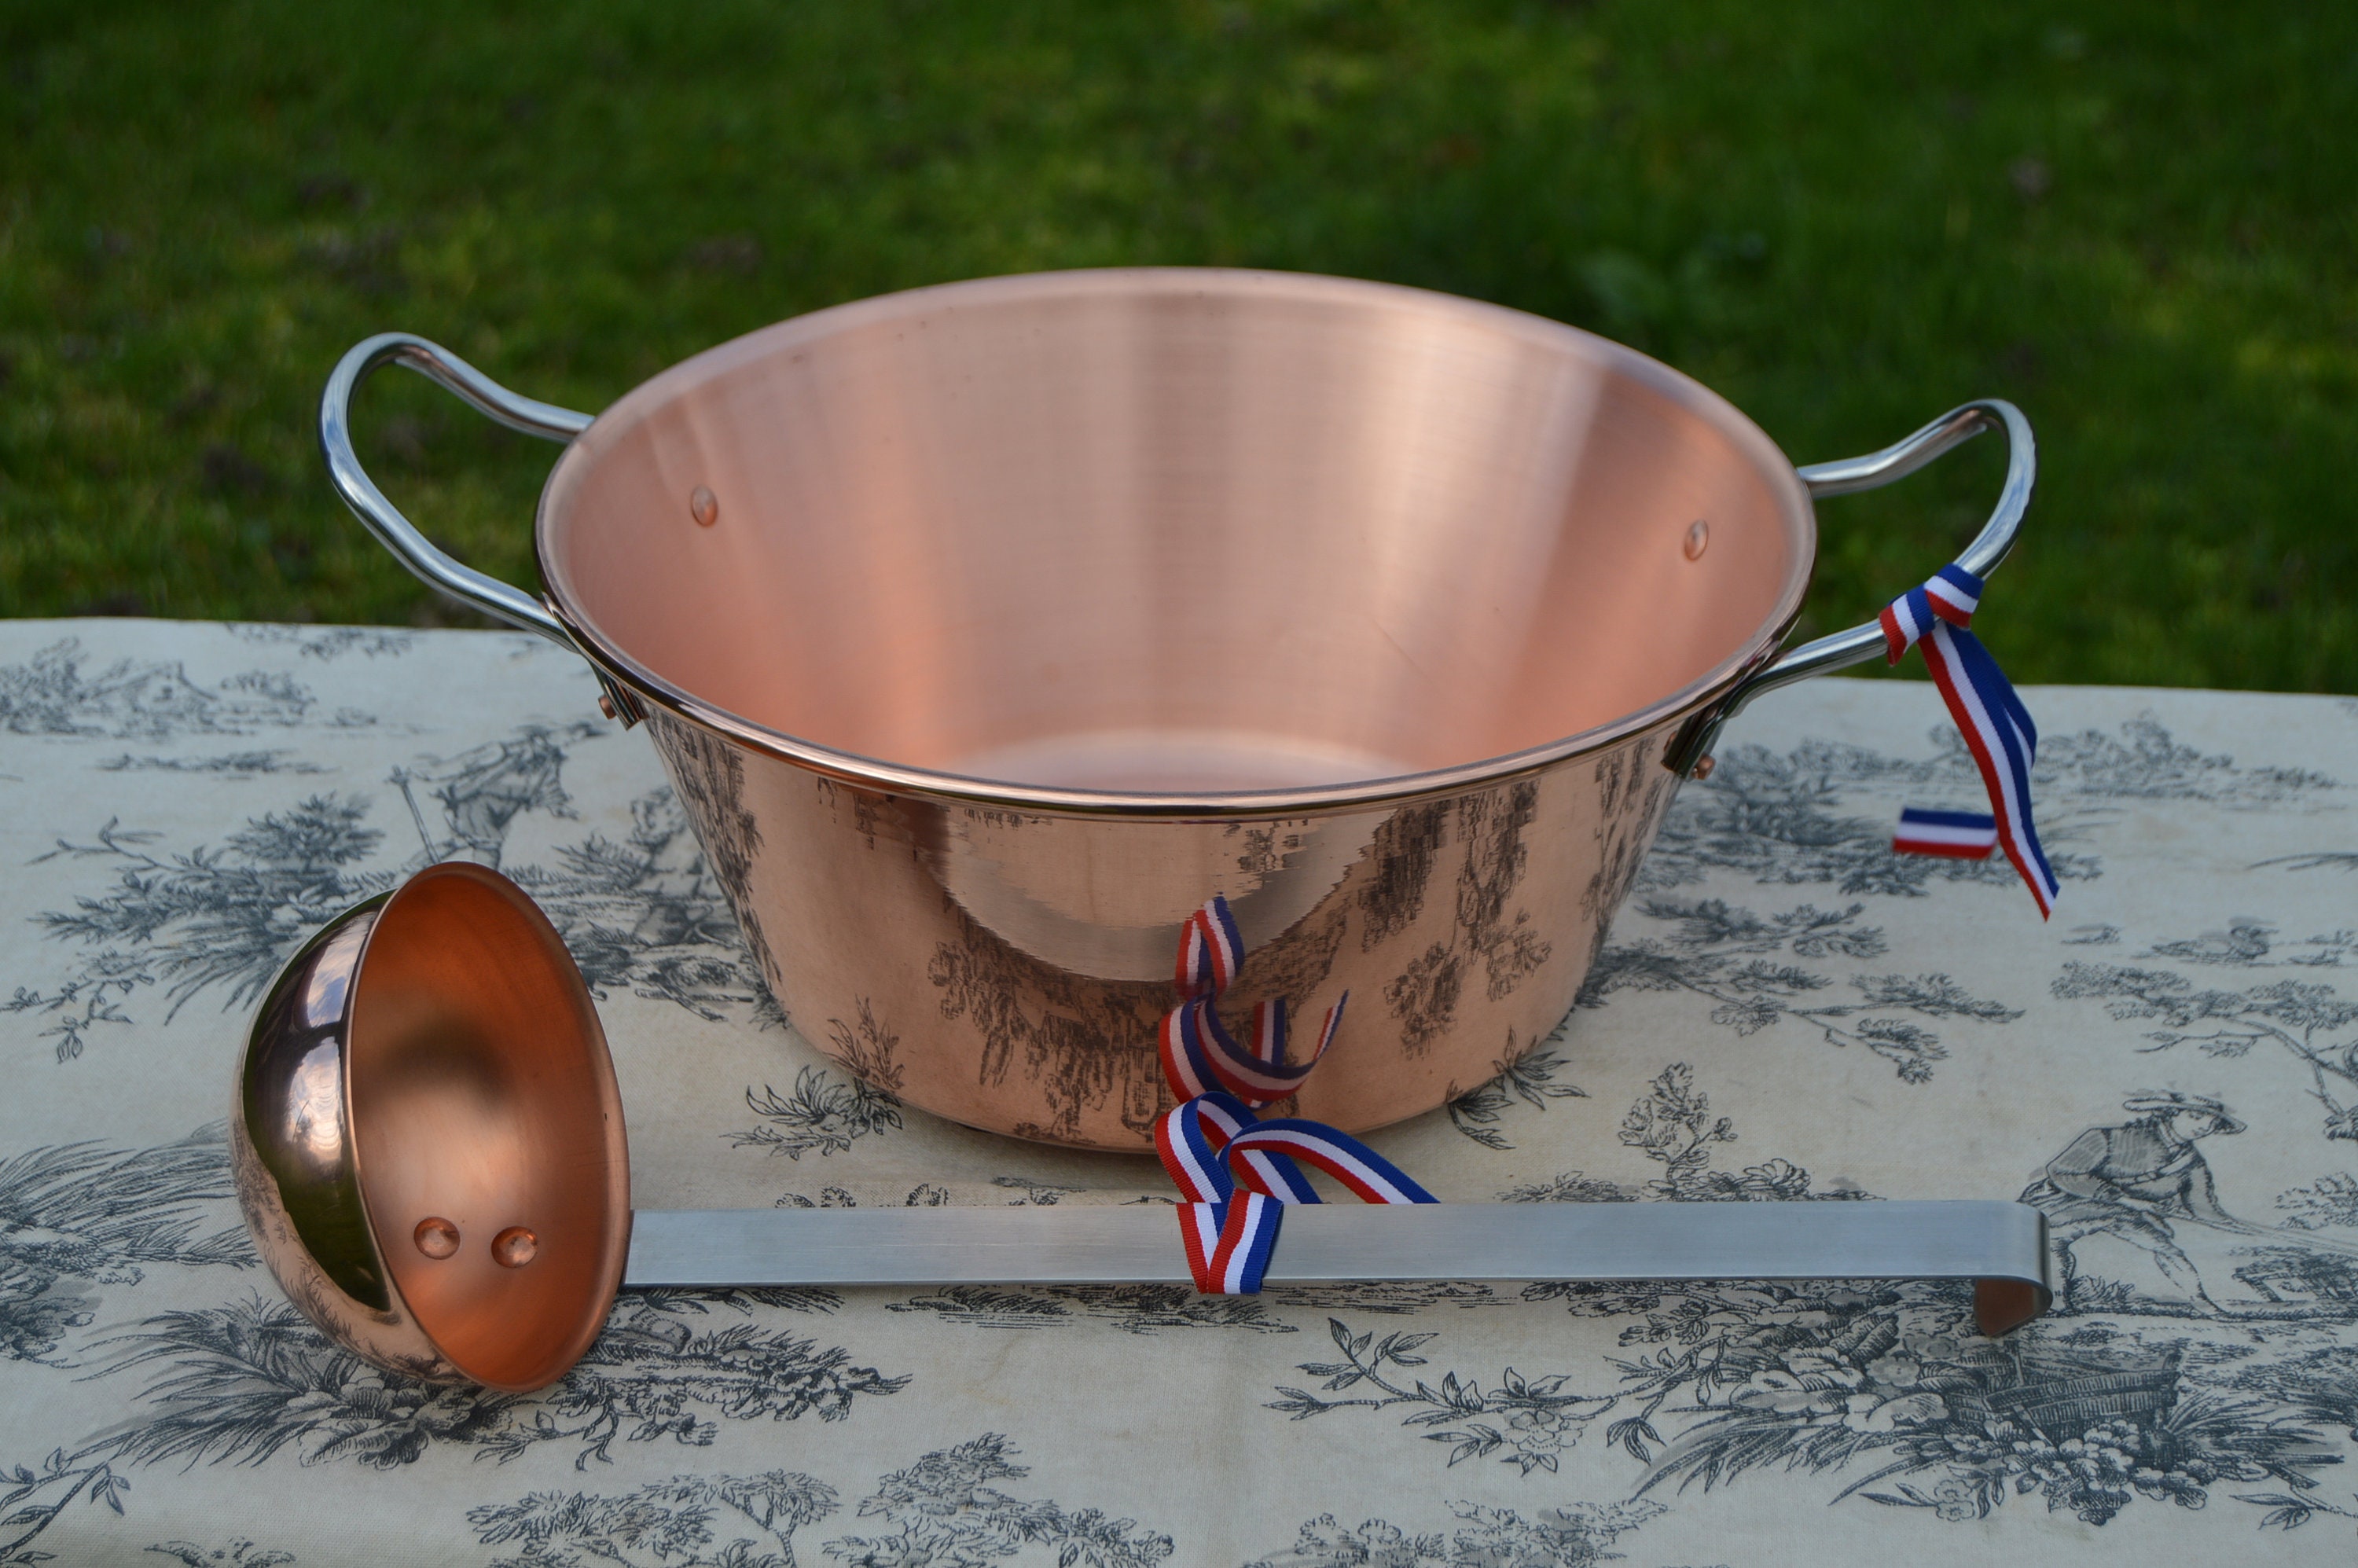 Nouveau Nkc 28 cm Copper Jam Pan + Ladle de Normandy Kitchen Jelly 11 Roulé Top Poignées en Acier In